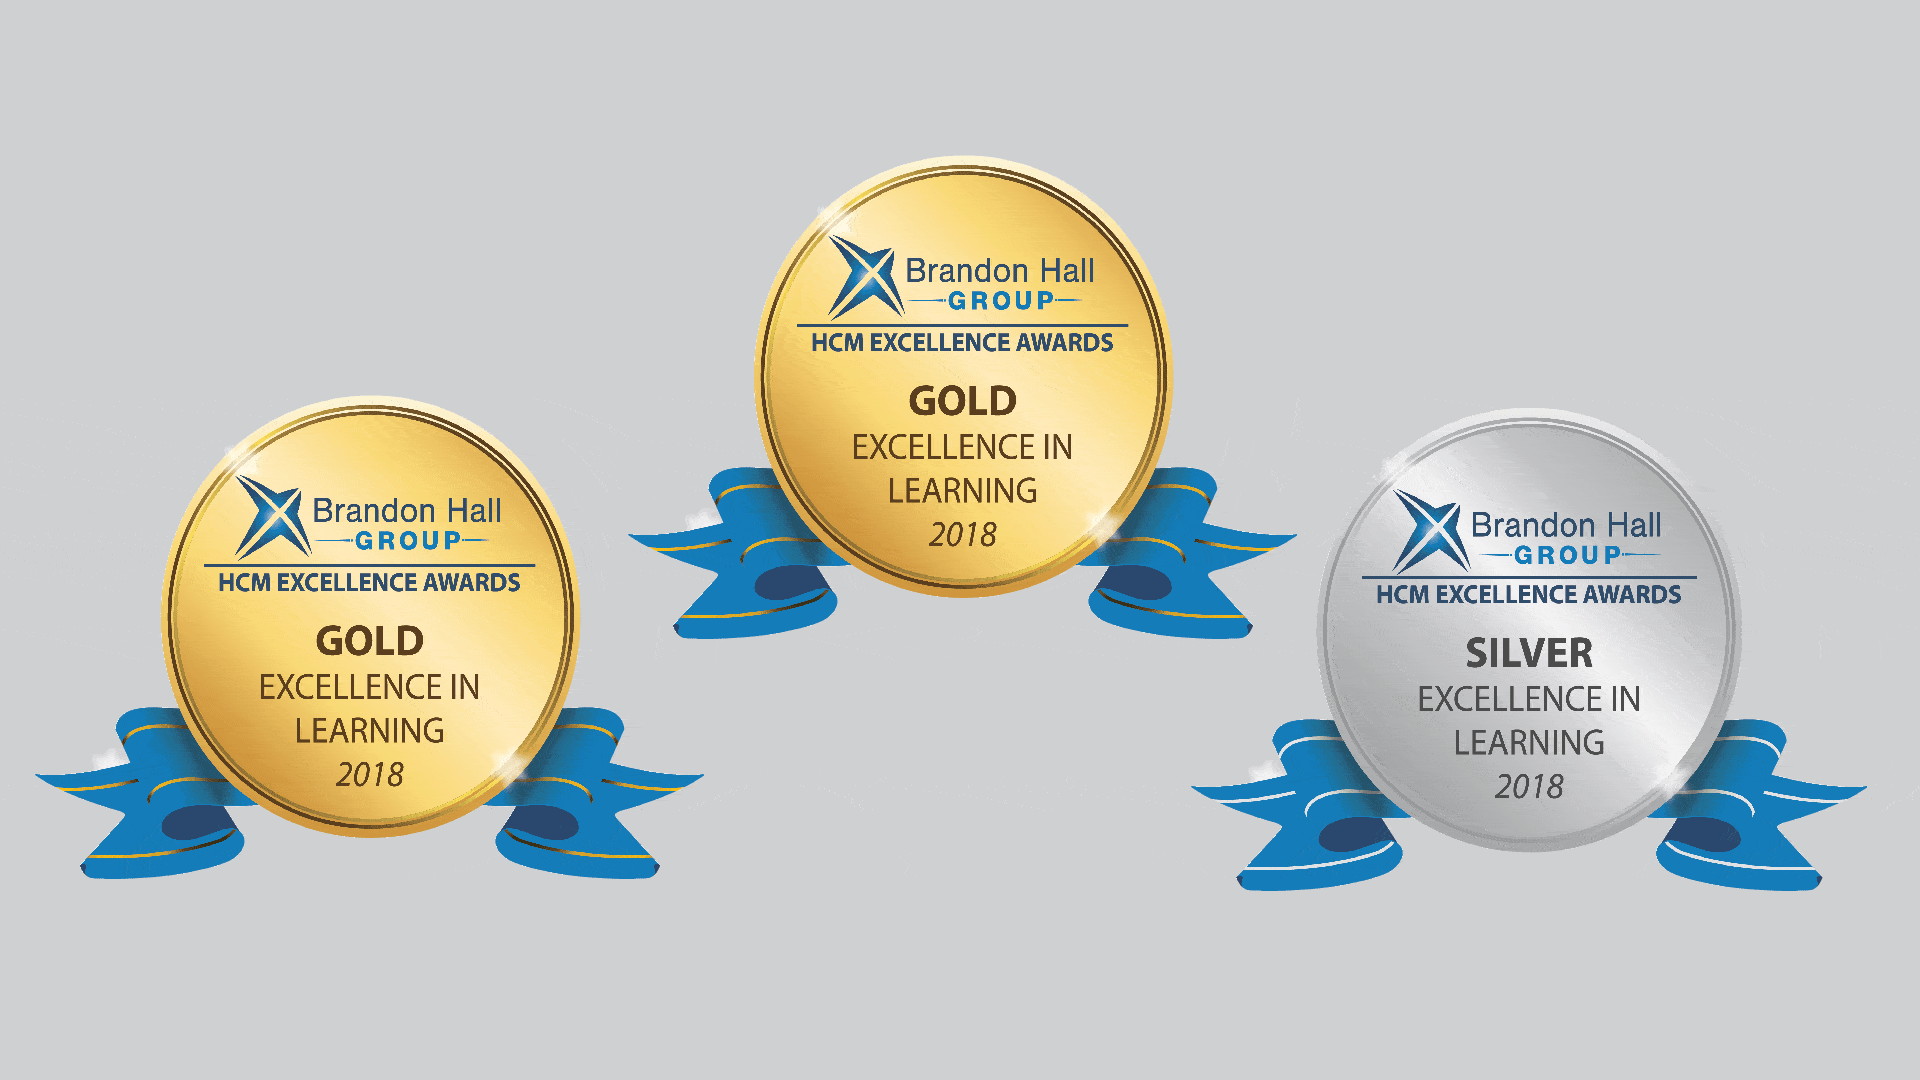 HCM Excellence Awards logos